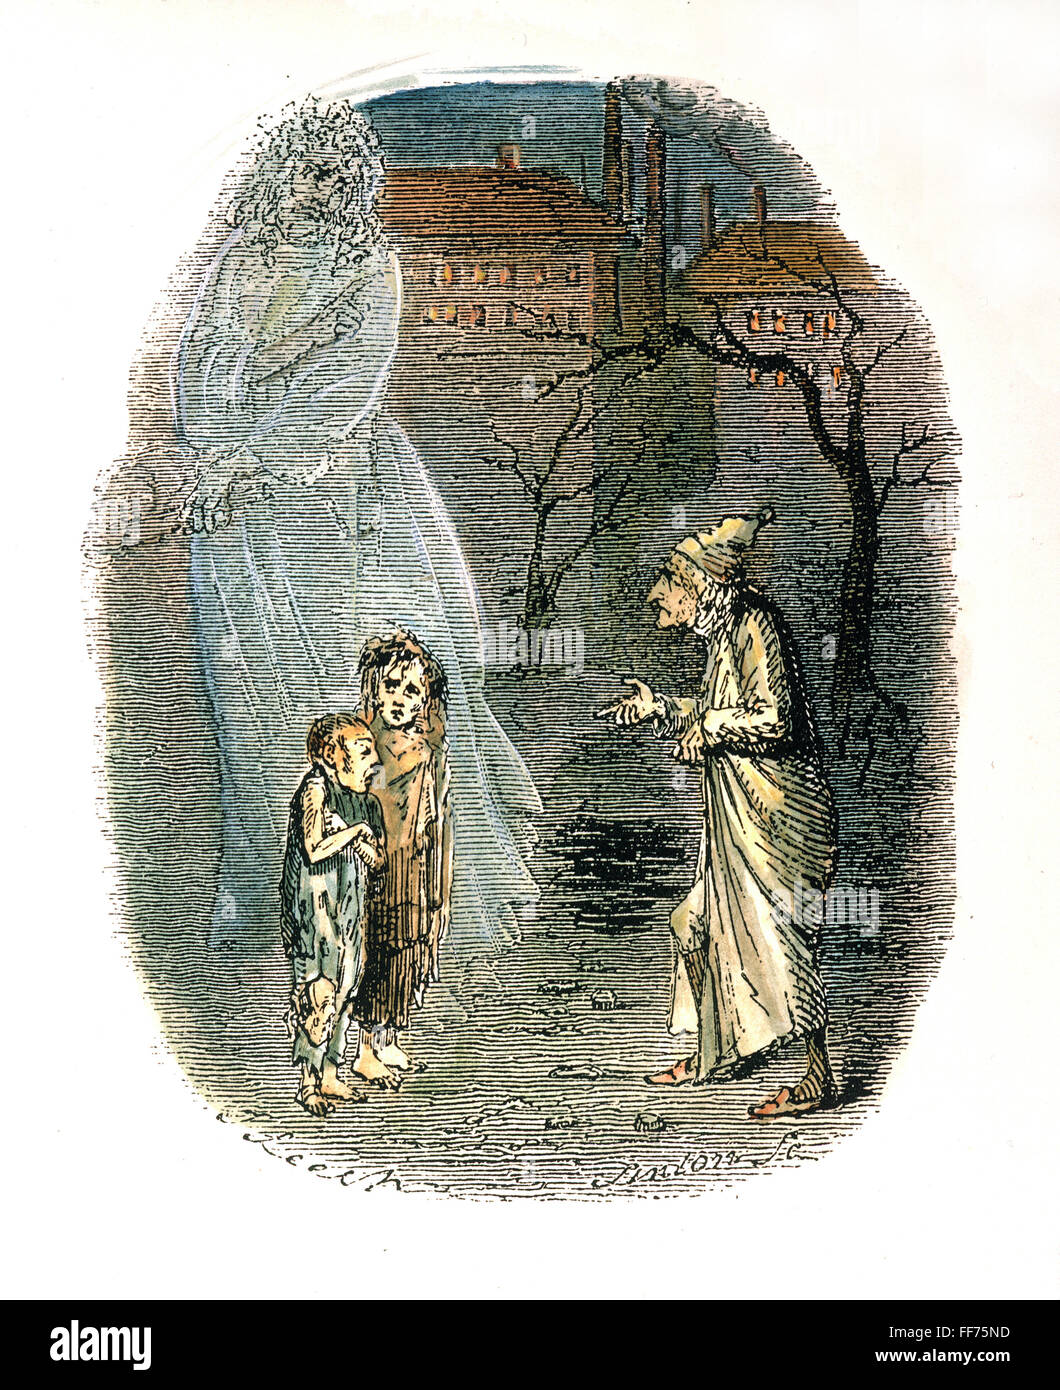 DICKENS : un chant de noël. /NIgnorance et voulez. Gravure couleur par John Leech à partir de la première édition de Charles Dickens' 'A Christmas Carol', 1843. Banque D'Images